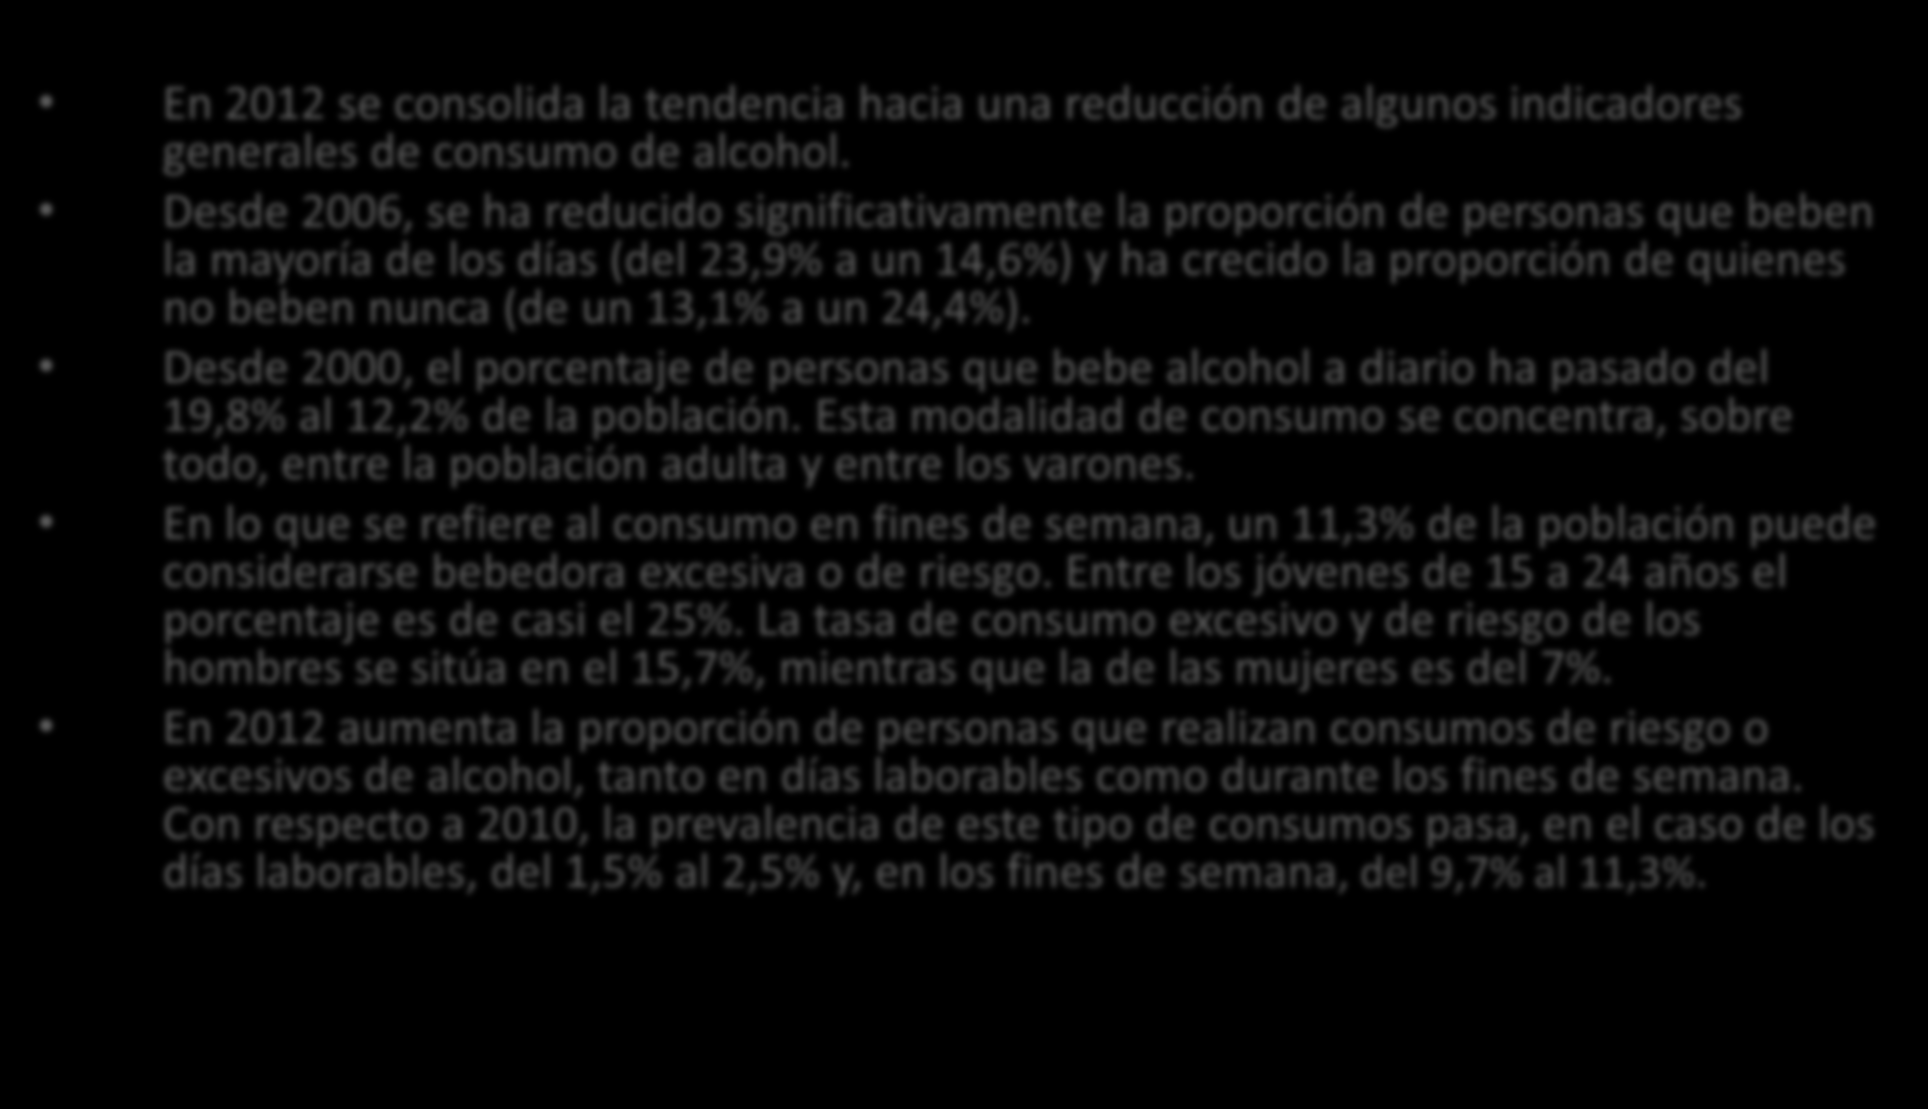 Alcohol En 2012 se consolida la tendencia hacia una reducción de algunos indicadores generales de consumo de alcohol.